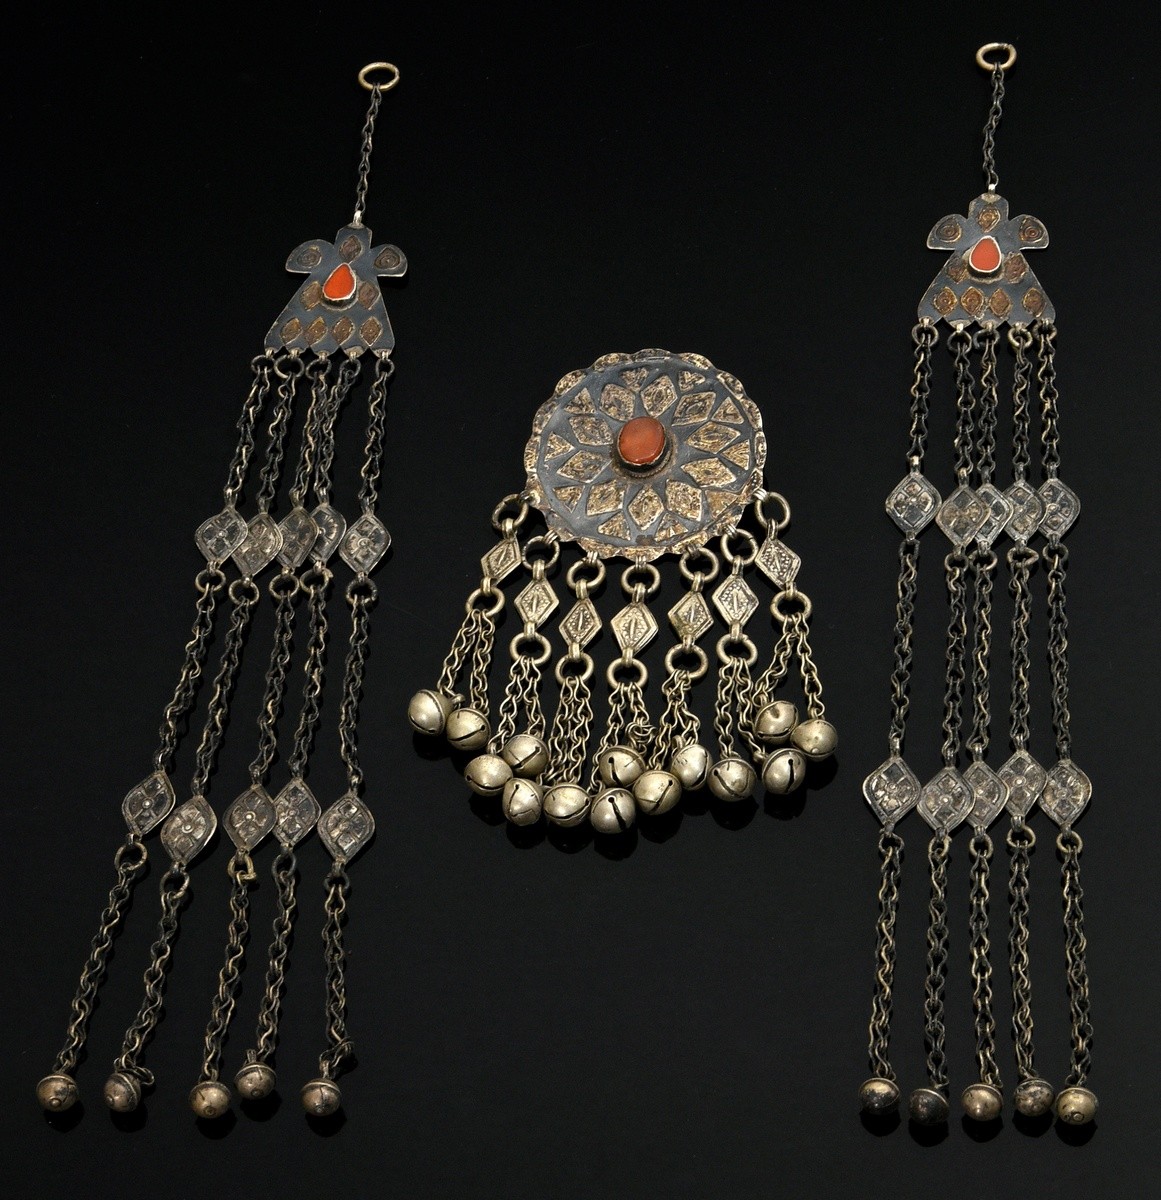 3 Teile Yomud Turkmenen Schmuck mit Schellenbehang: 2 Zopfschmuck oder Schläfenschmuck aus vogelför